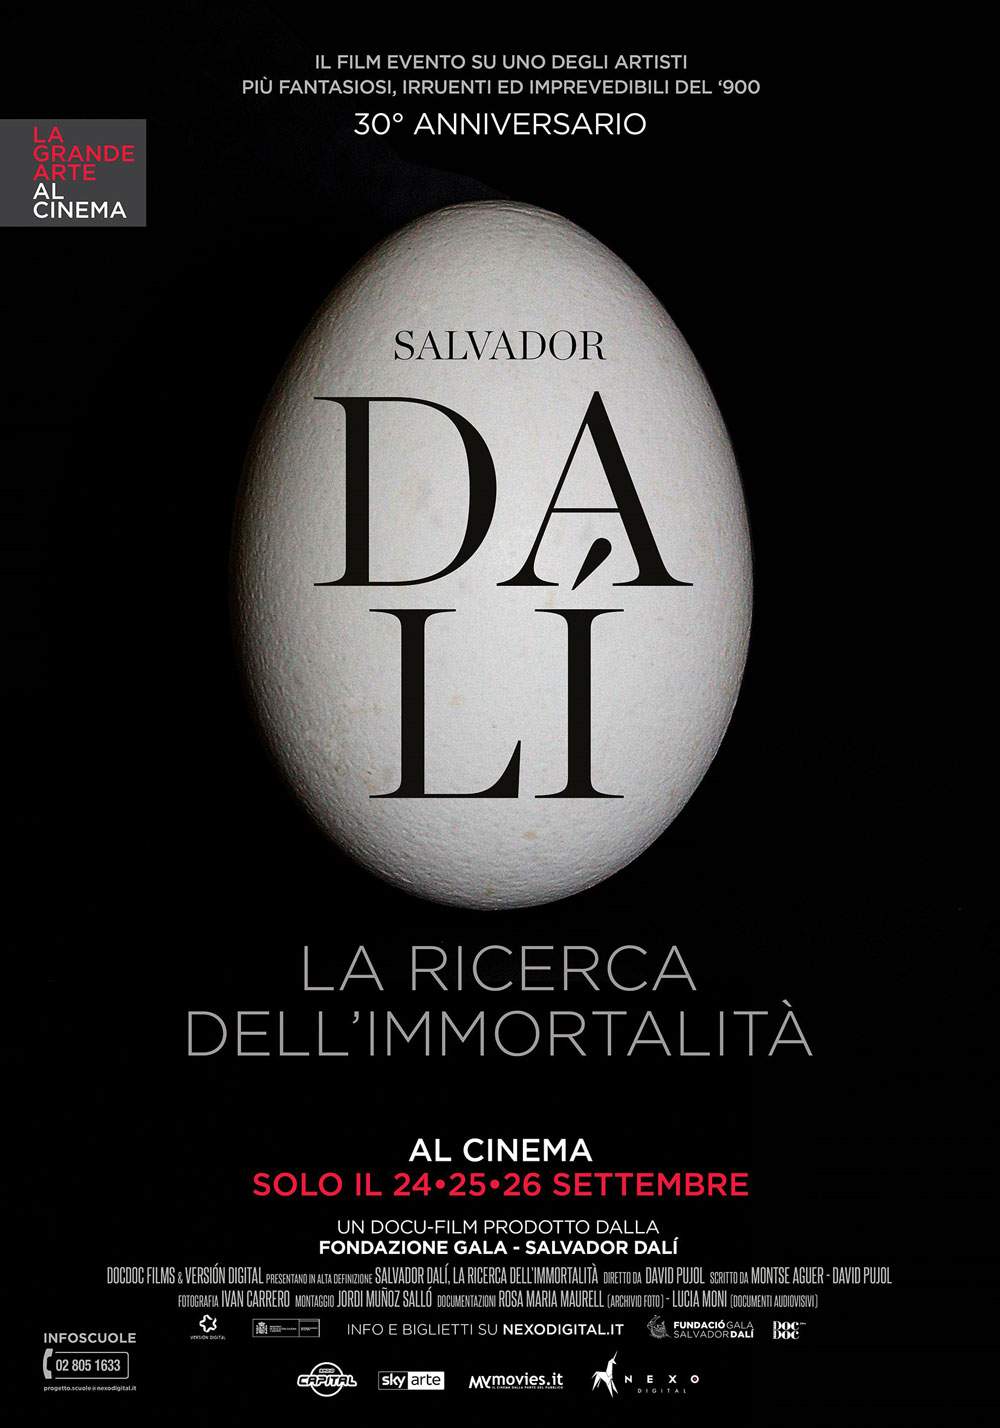 The new 2018 billboard of La Grande Arte al Cinema opens with DalÃ­